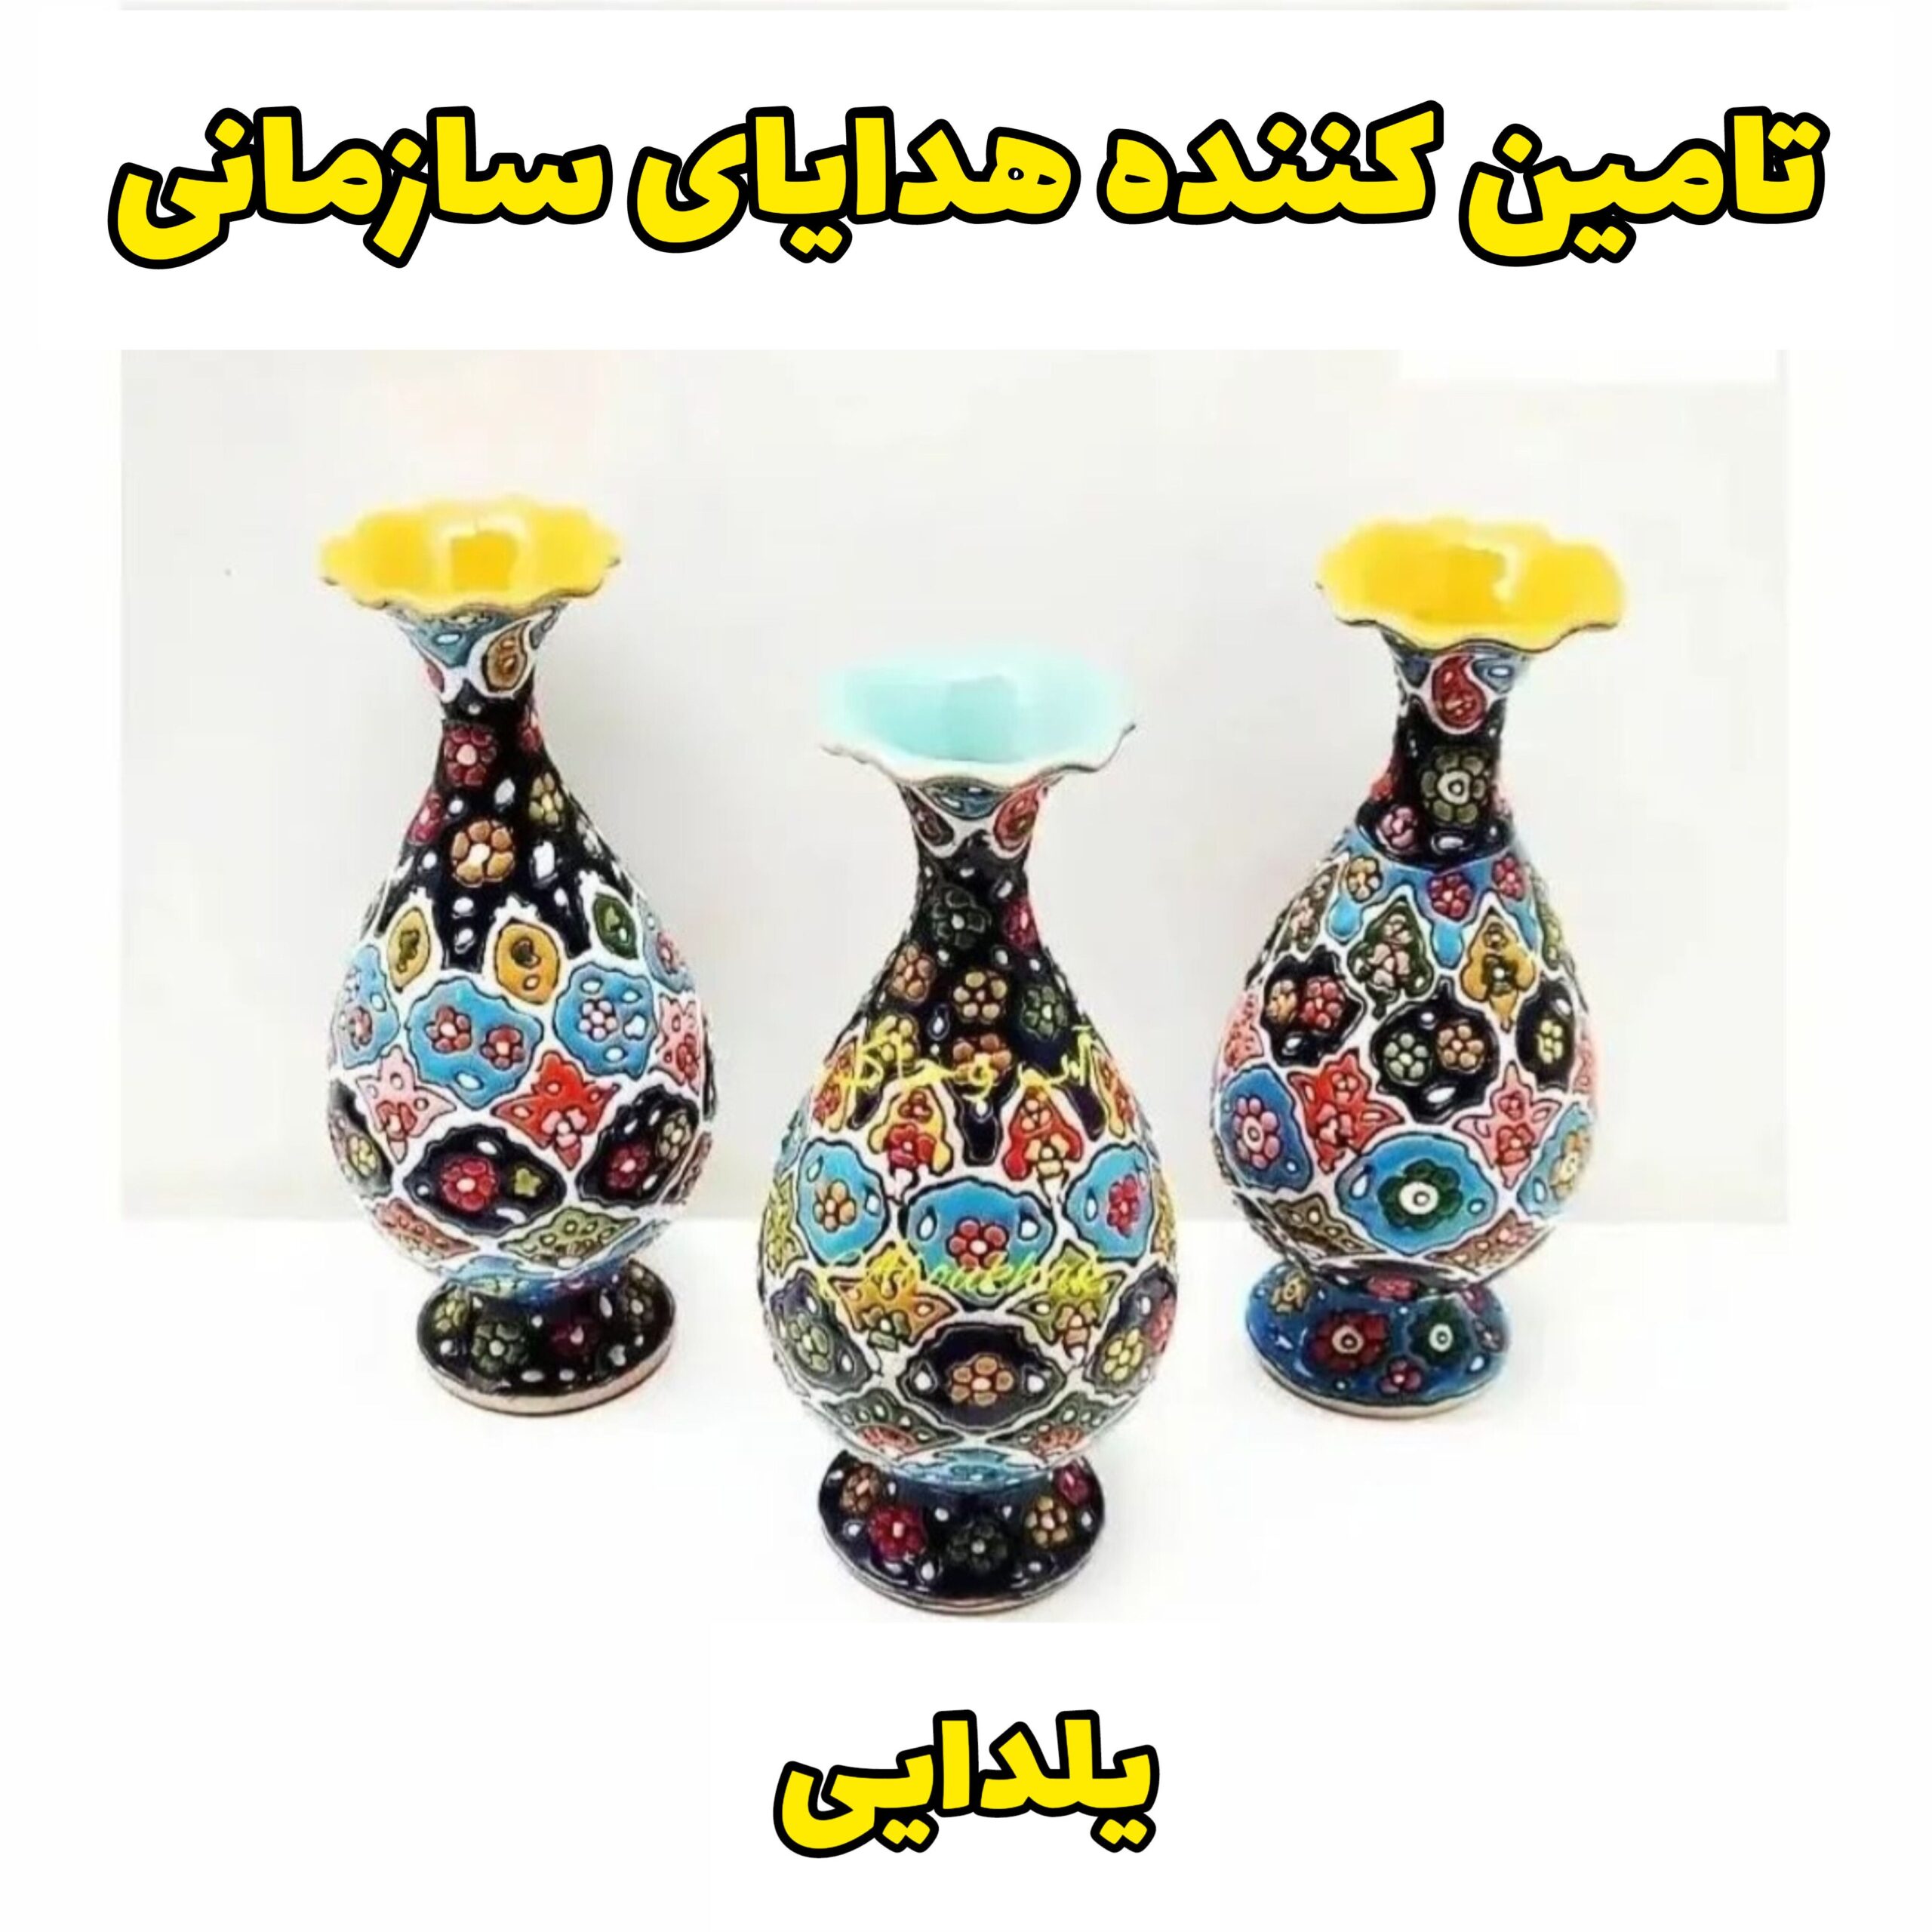 هدایای تبلیغاتی شب یلدا صنایع دستی